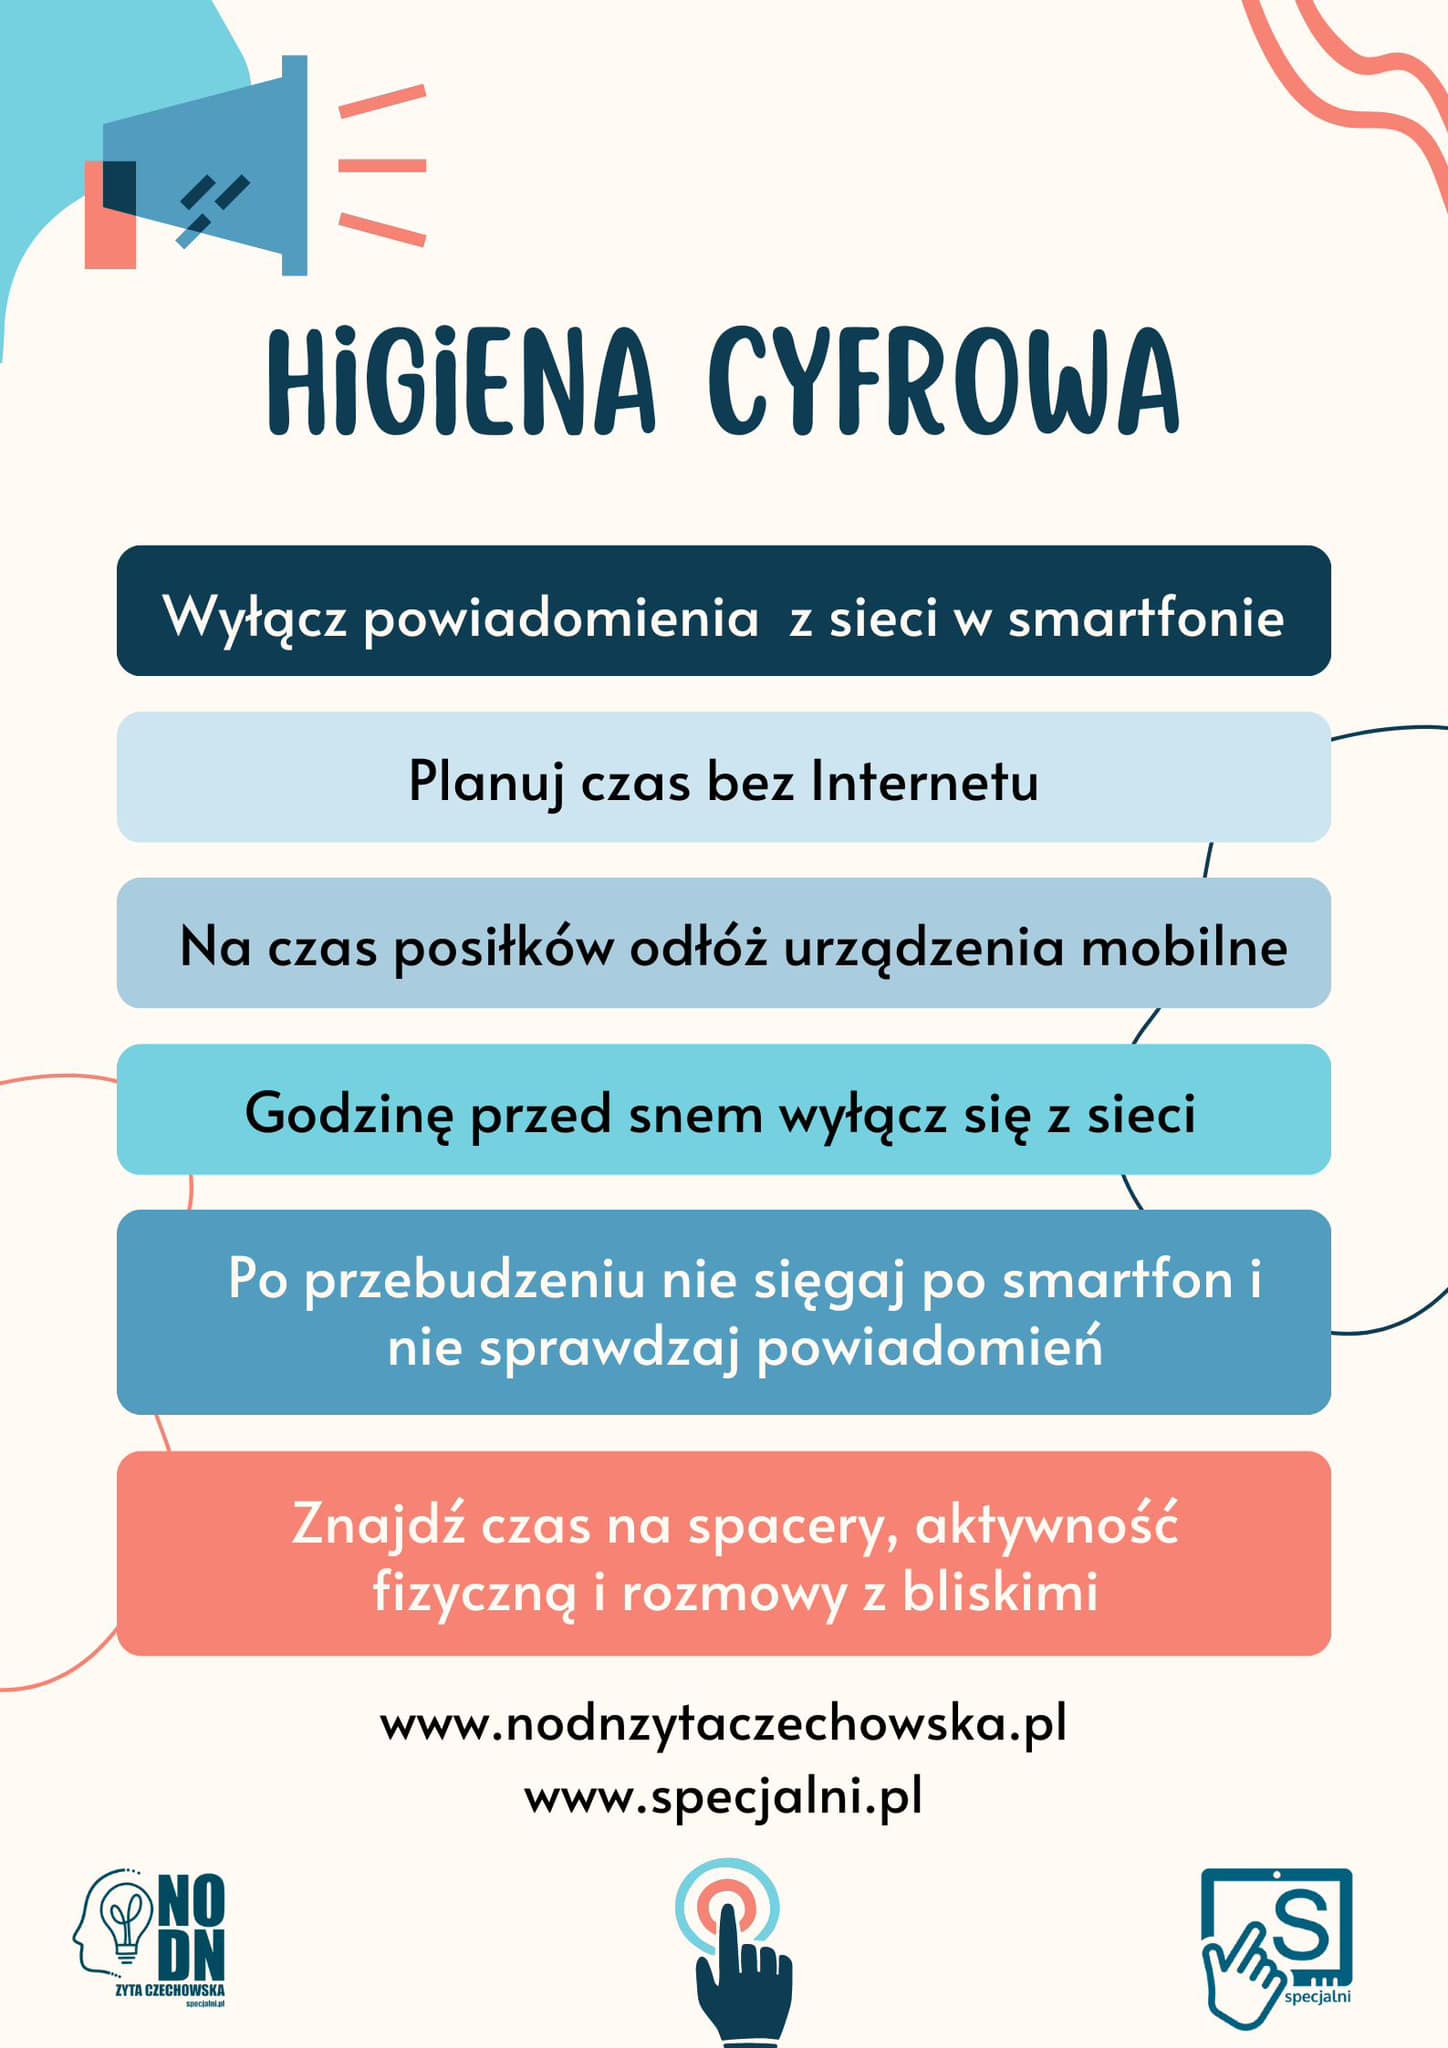 Higiena cyfrowa